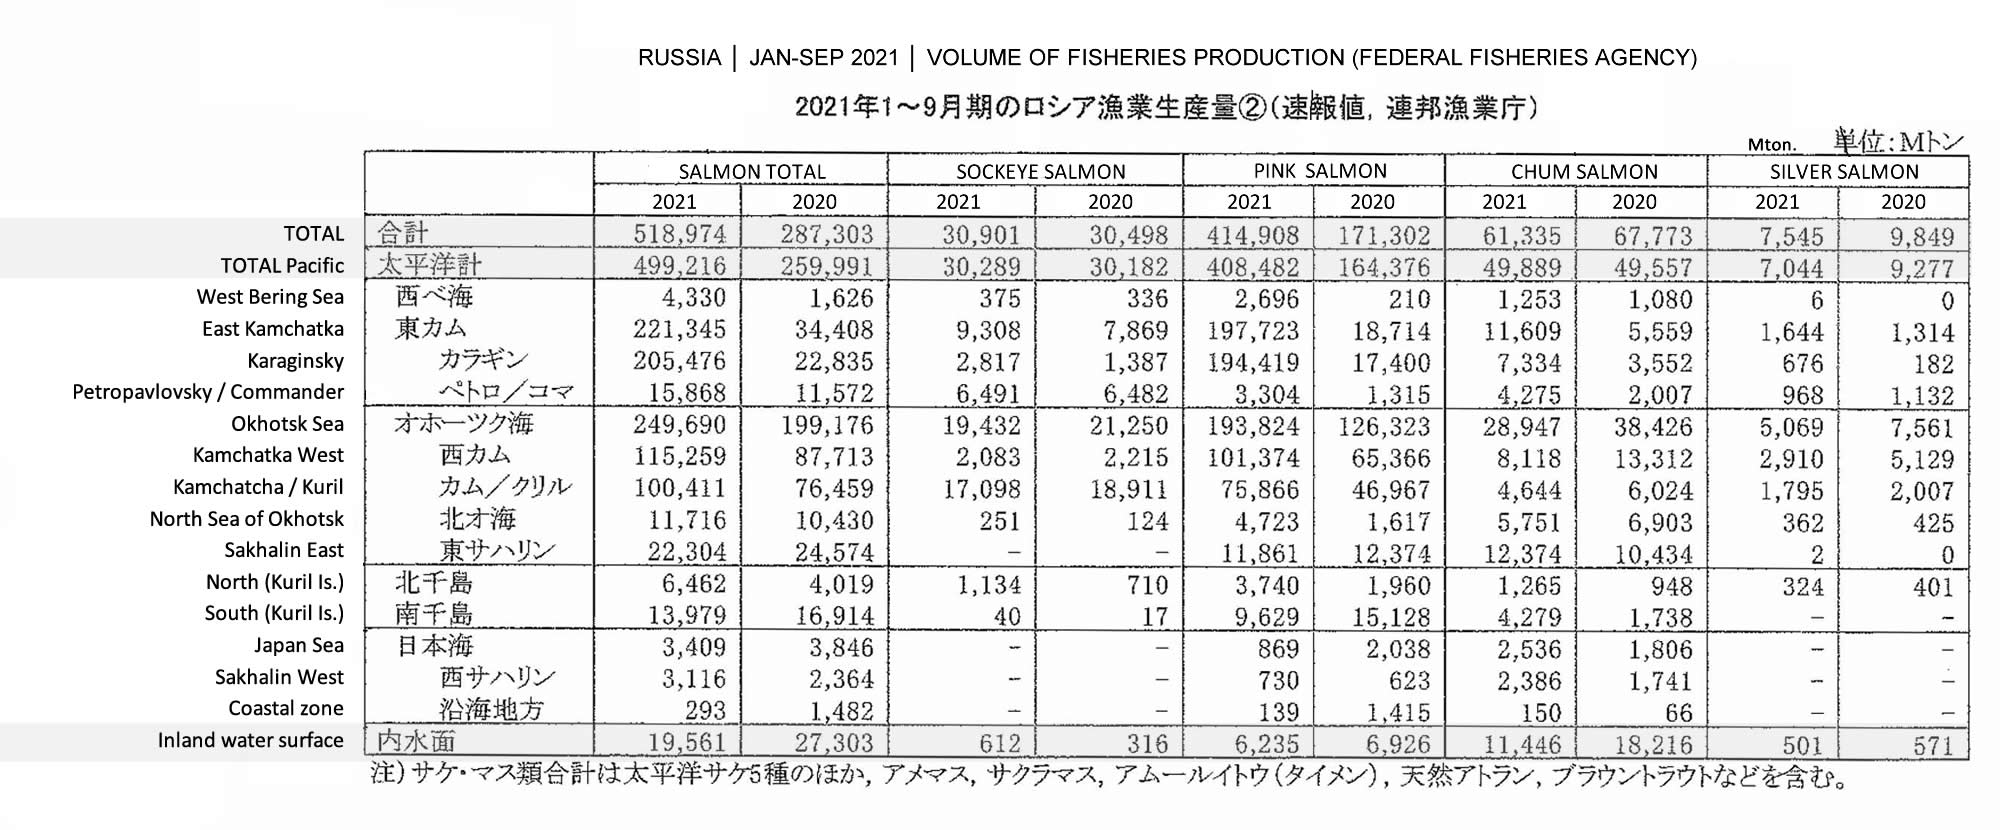 2021122802ing-Volumen de producción de la pesca de Rusia2 FIS seafood_media.jpg